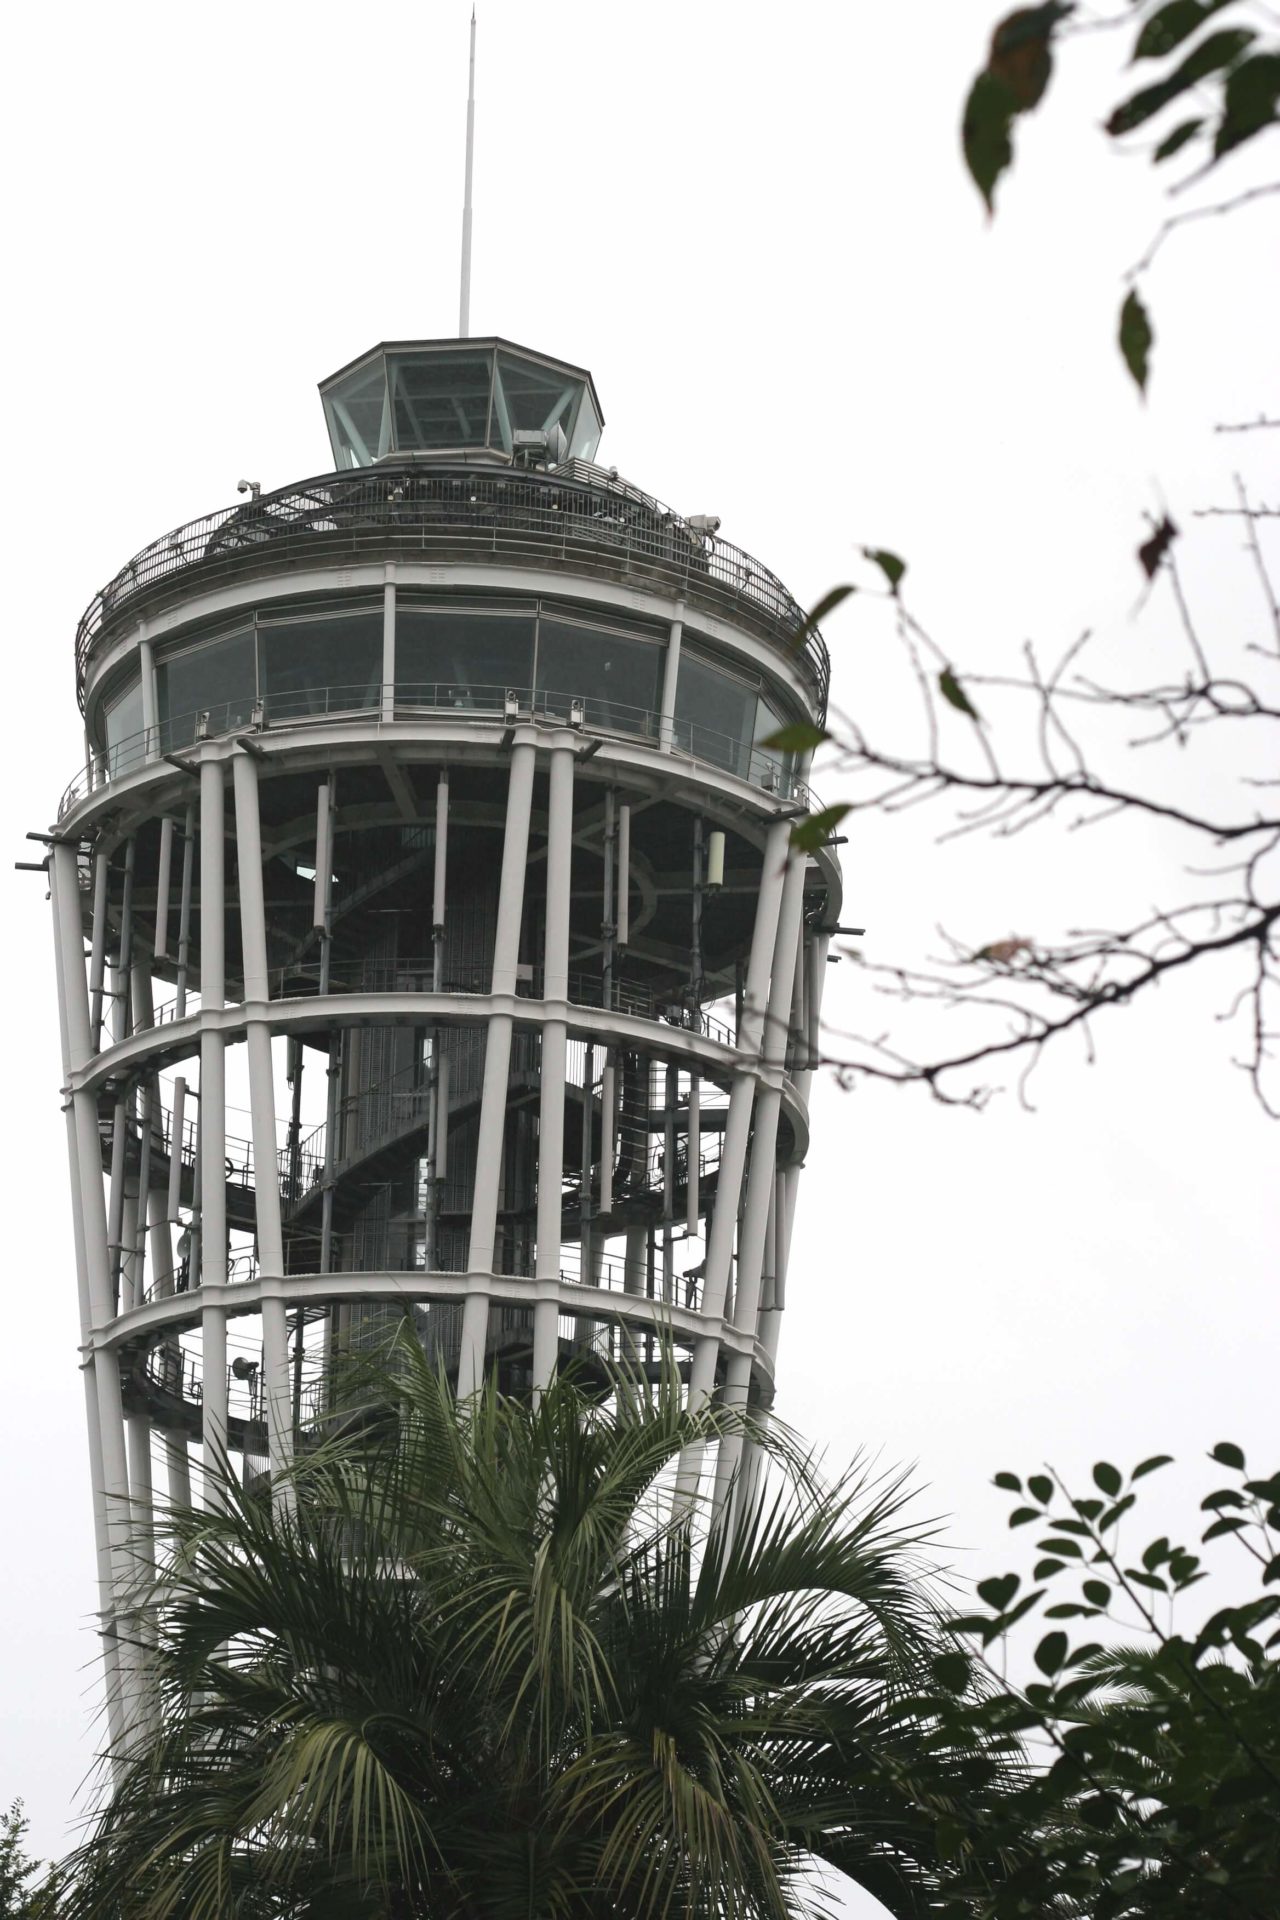 江の島シーキャンドル（展望灯台）